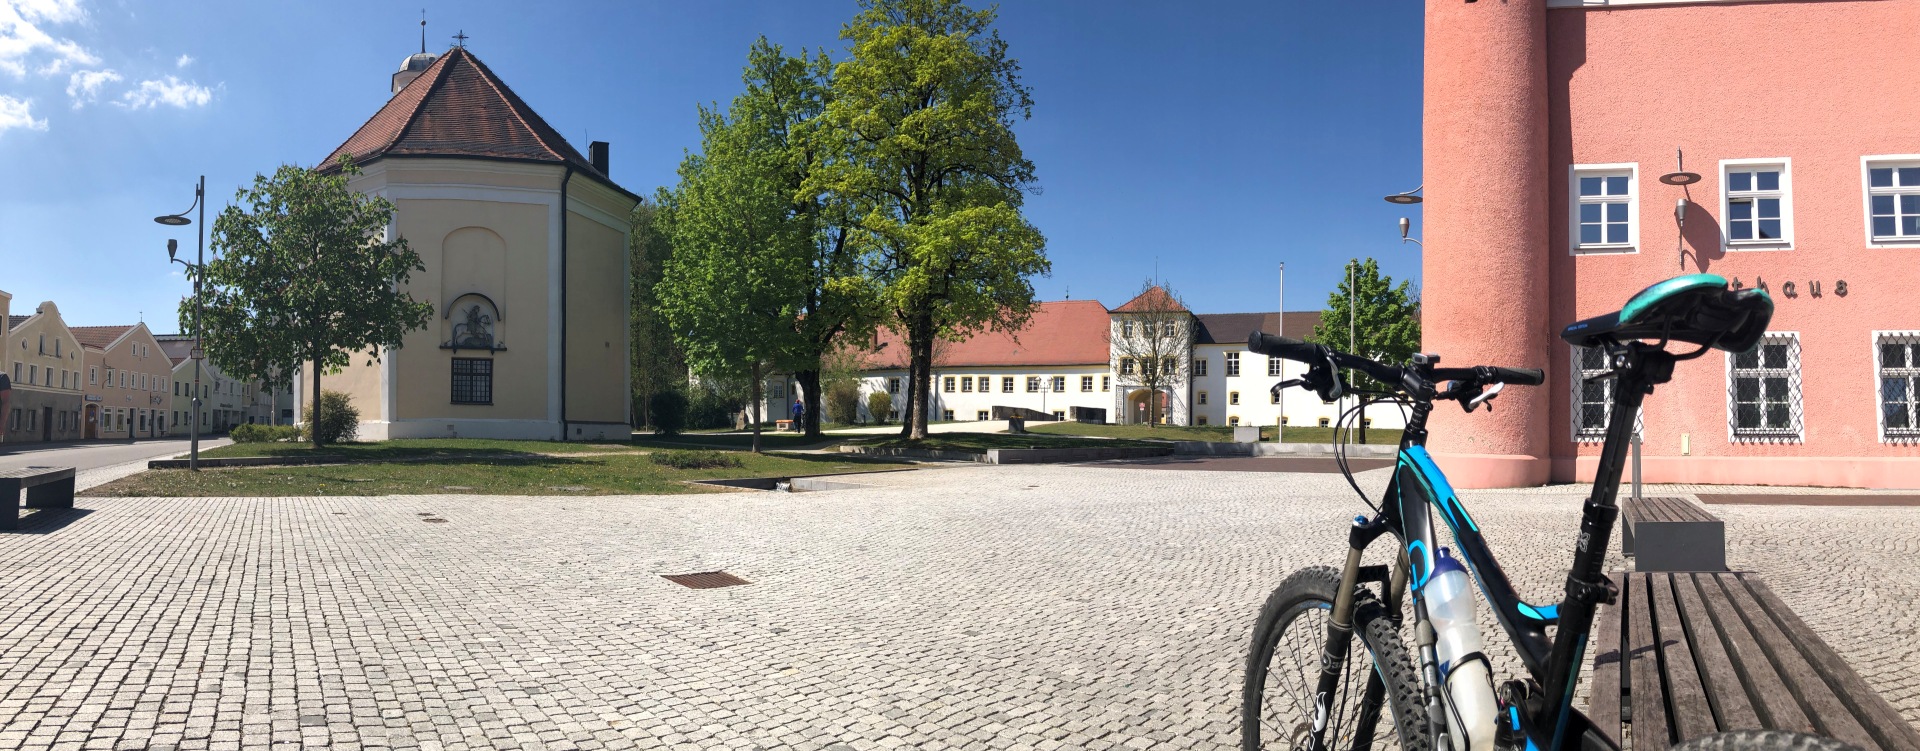 Hier sehen Sie den Stadtplatz in Tüssling mit einem Fahrrad im Vordergrund